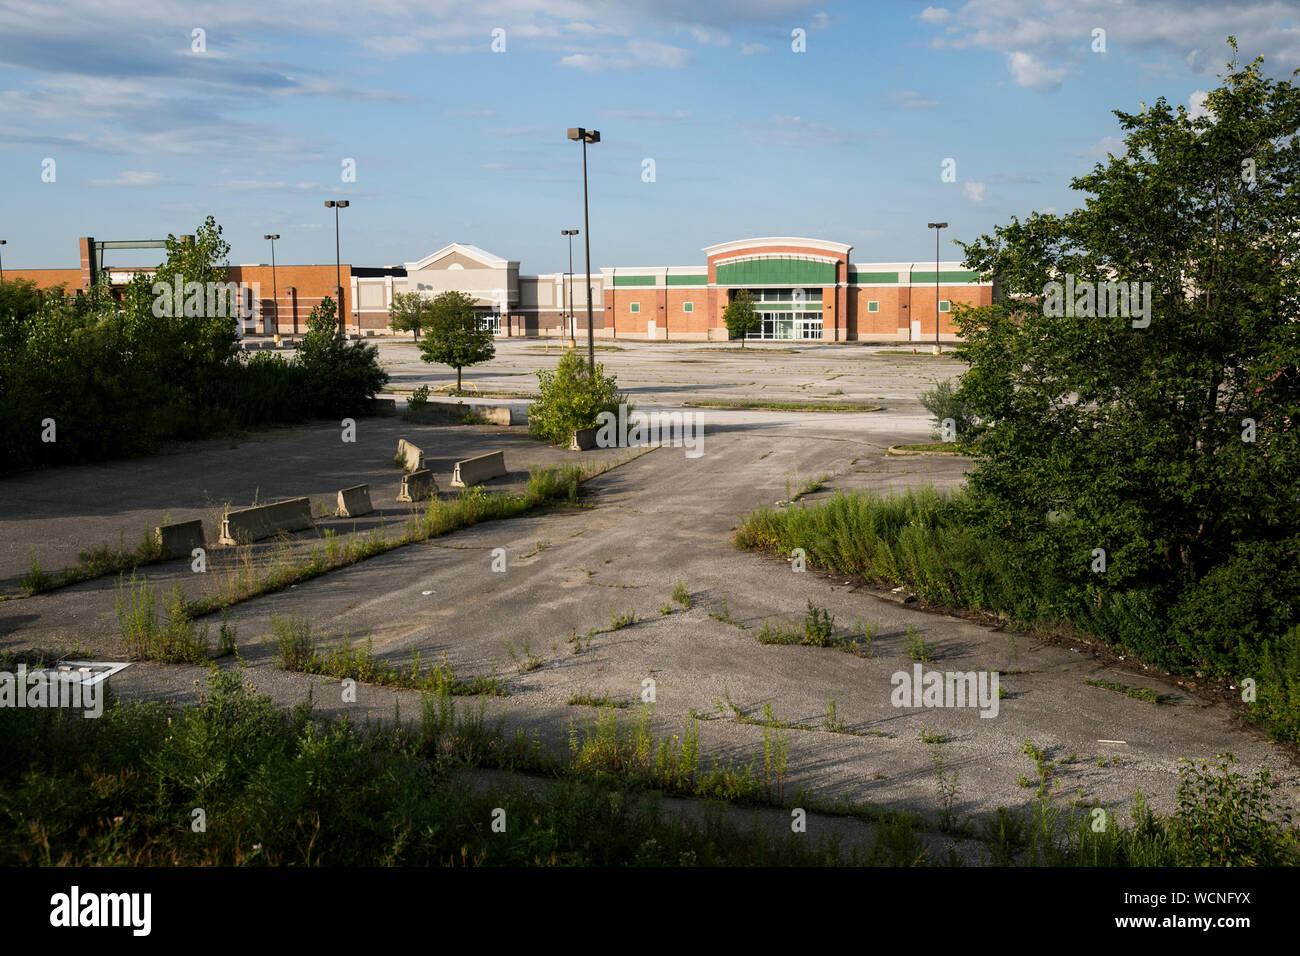 Eine Reihe von geschlossenen und Einzelhandel verlassen in einer verlassenen Einkaufszentrum in Garfield Heights, Ohio am 12. August 2019 Stockfoto